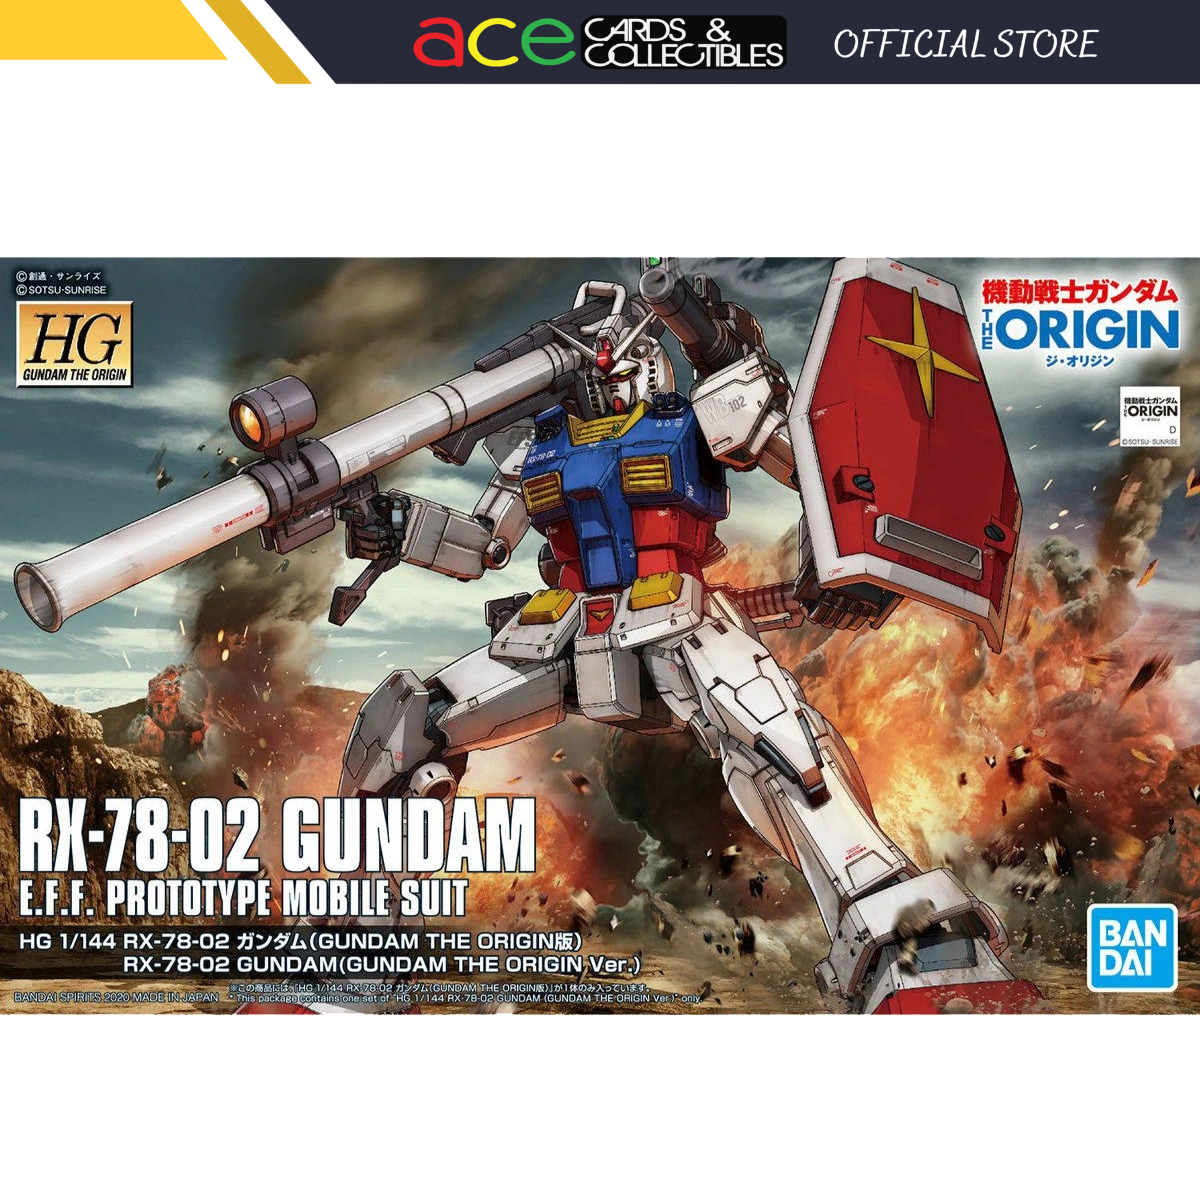 Gunpla HG 1/144 RX-78-02 Gundam (Gundam The Origin Ver.)-Bandai-Ace Cards & Collectibles